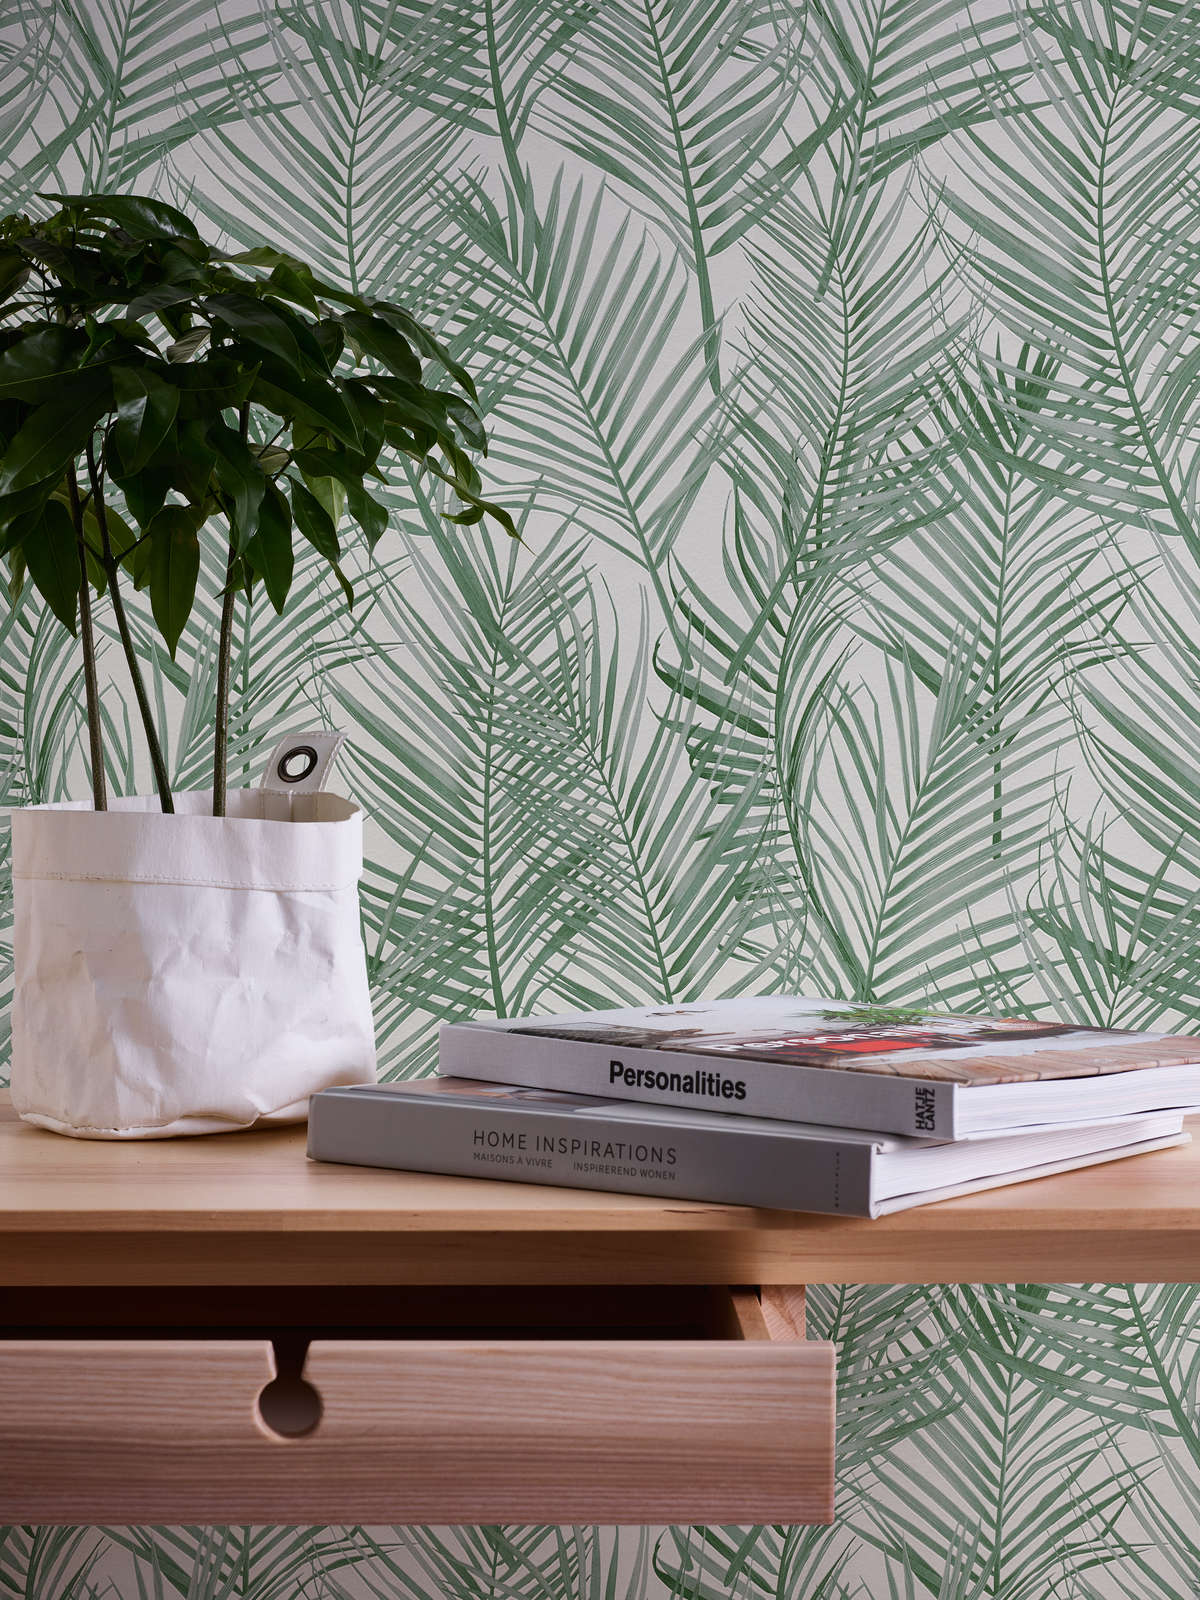             Papel pintado no tejido con motivo de palmeras grandes - verde, blanco
        